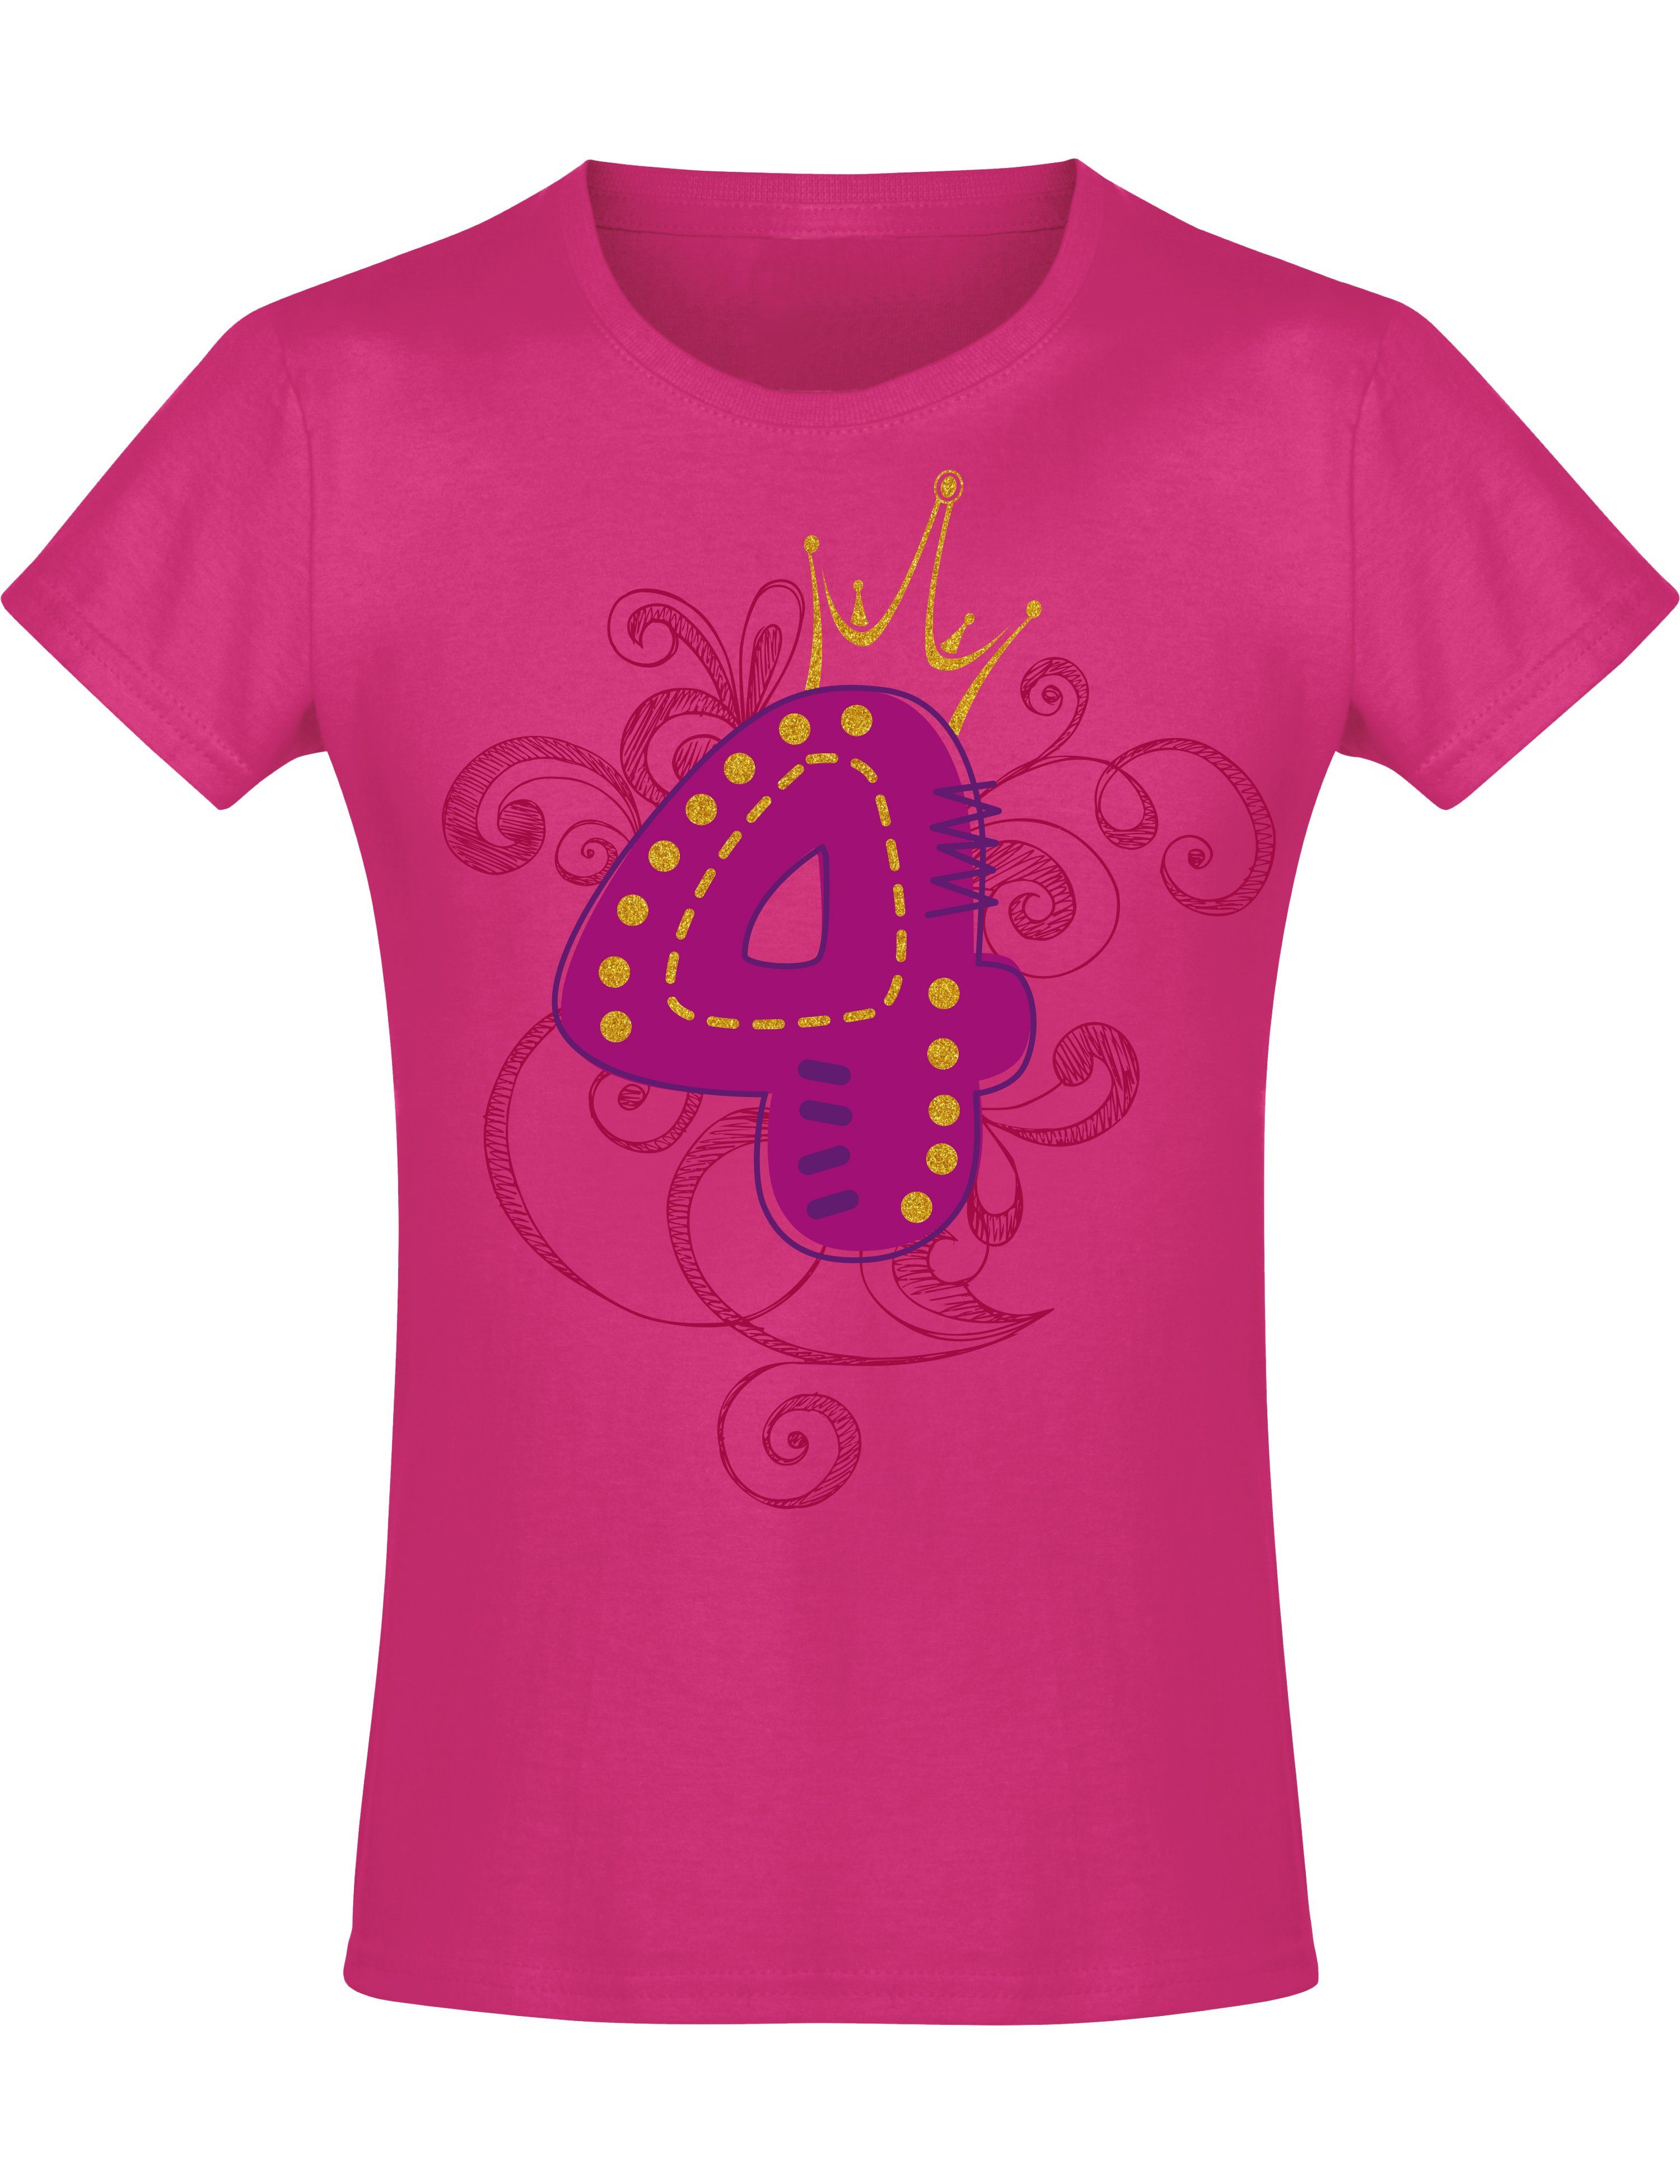 Baddery Print-Shirt Geburstagsgeschenk für Mädchen : 4 Jahre mit Krone, hochwertiger Siebdruck, aus Baumwolle